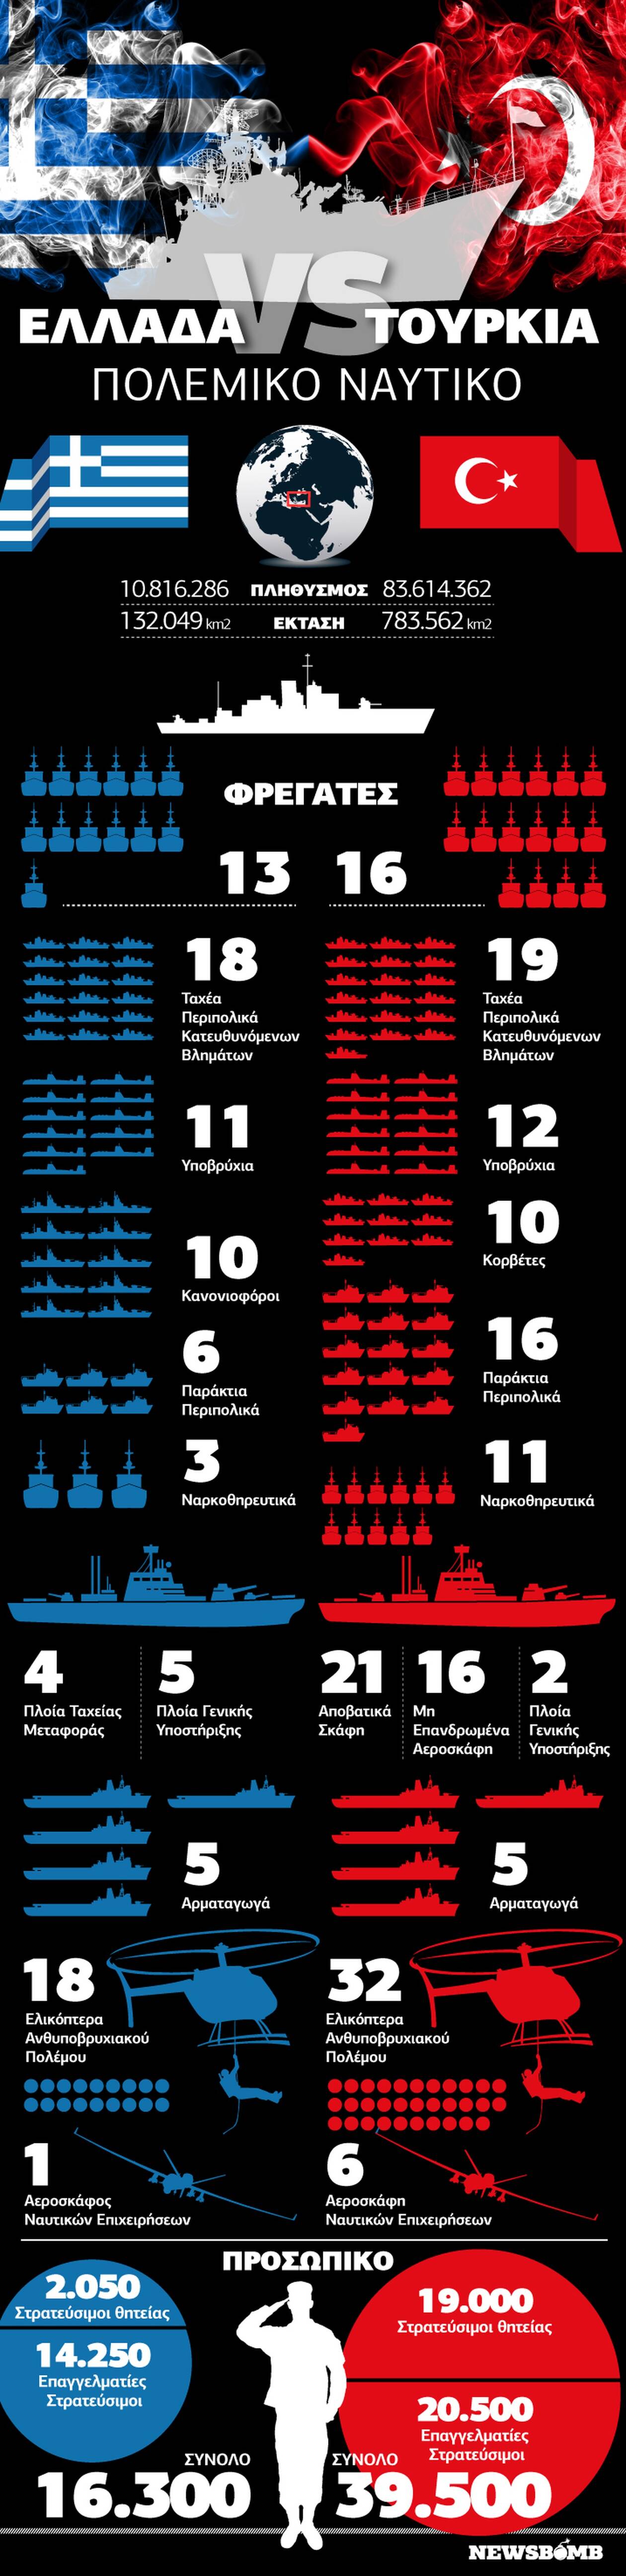 Ελλάδα VS Τουρκία: Ποια έχει πιο ισχυρό Πολεμικό Ναυτικό; Δείτε το Infographic του Newsbomb.gr